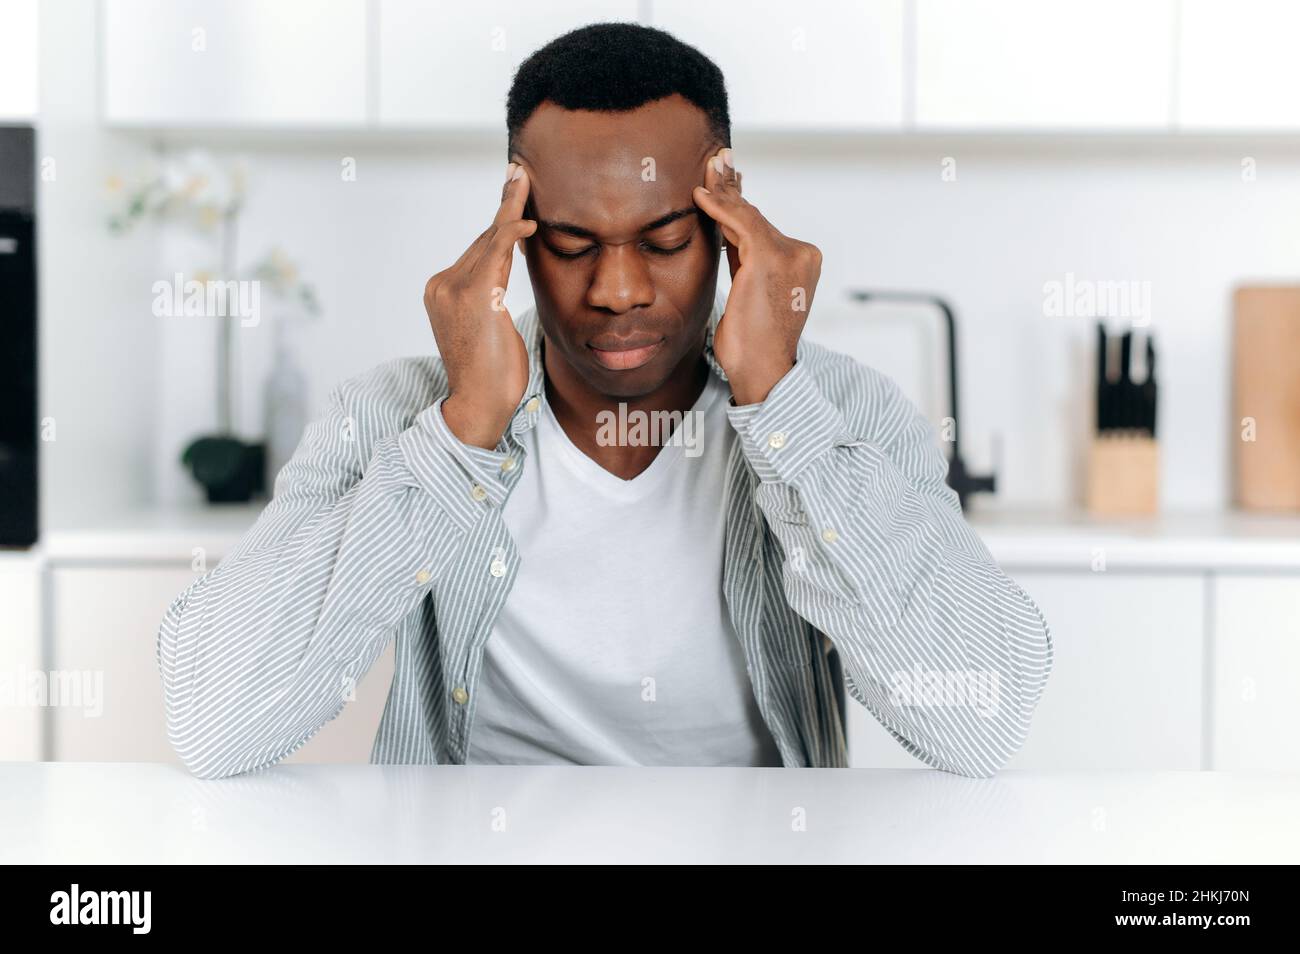 Trauriger afroamerikanischer Typ in Stress, allein am Tisch sitzend, in lässiger Kleidung, Müdigkeit, Kopfschmerzen, Migräne, Massierte seine Schläfen, schließt seine Augen, braucht Ruhe, Medikamente und Behandlung Stockfoto